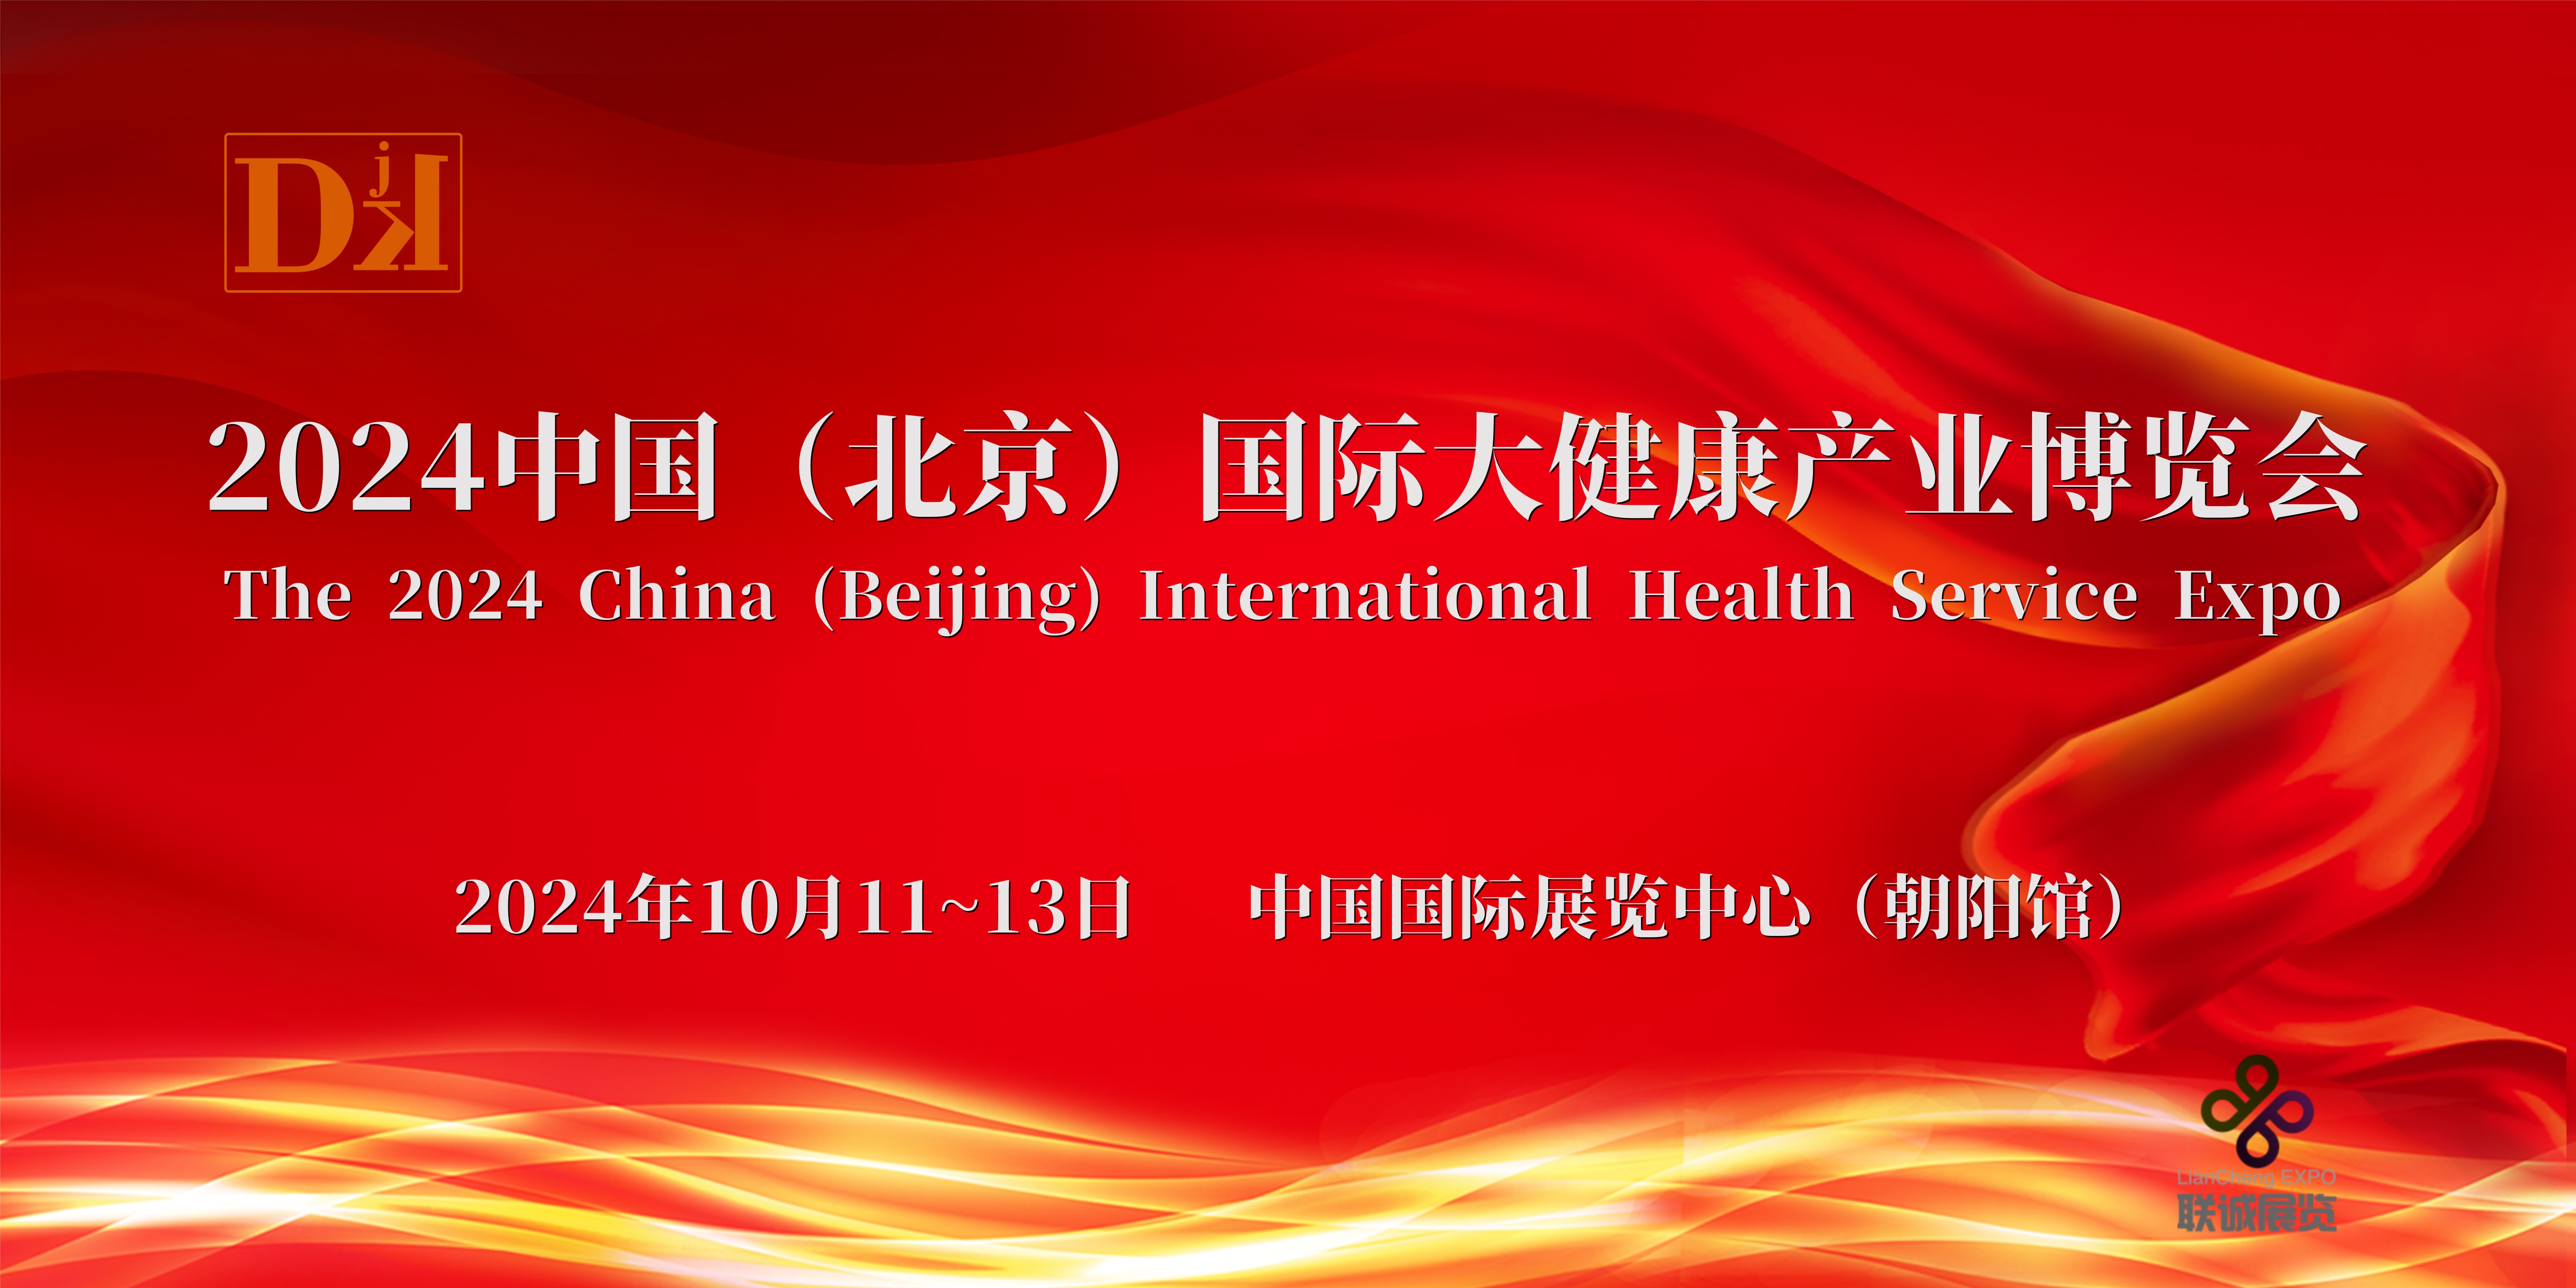 2024北京大健康展会/北京健康服务业展览会十月举办